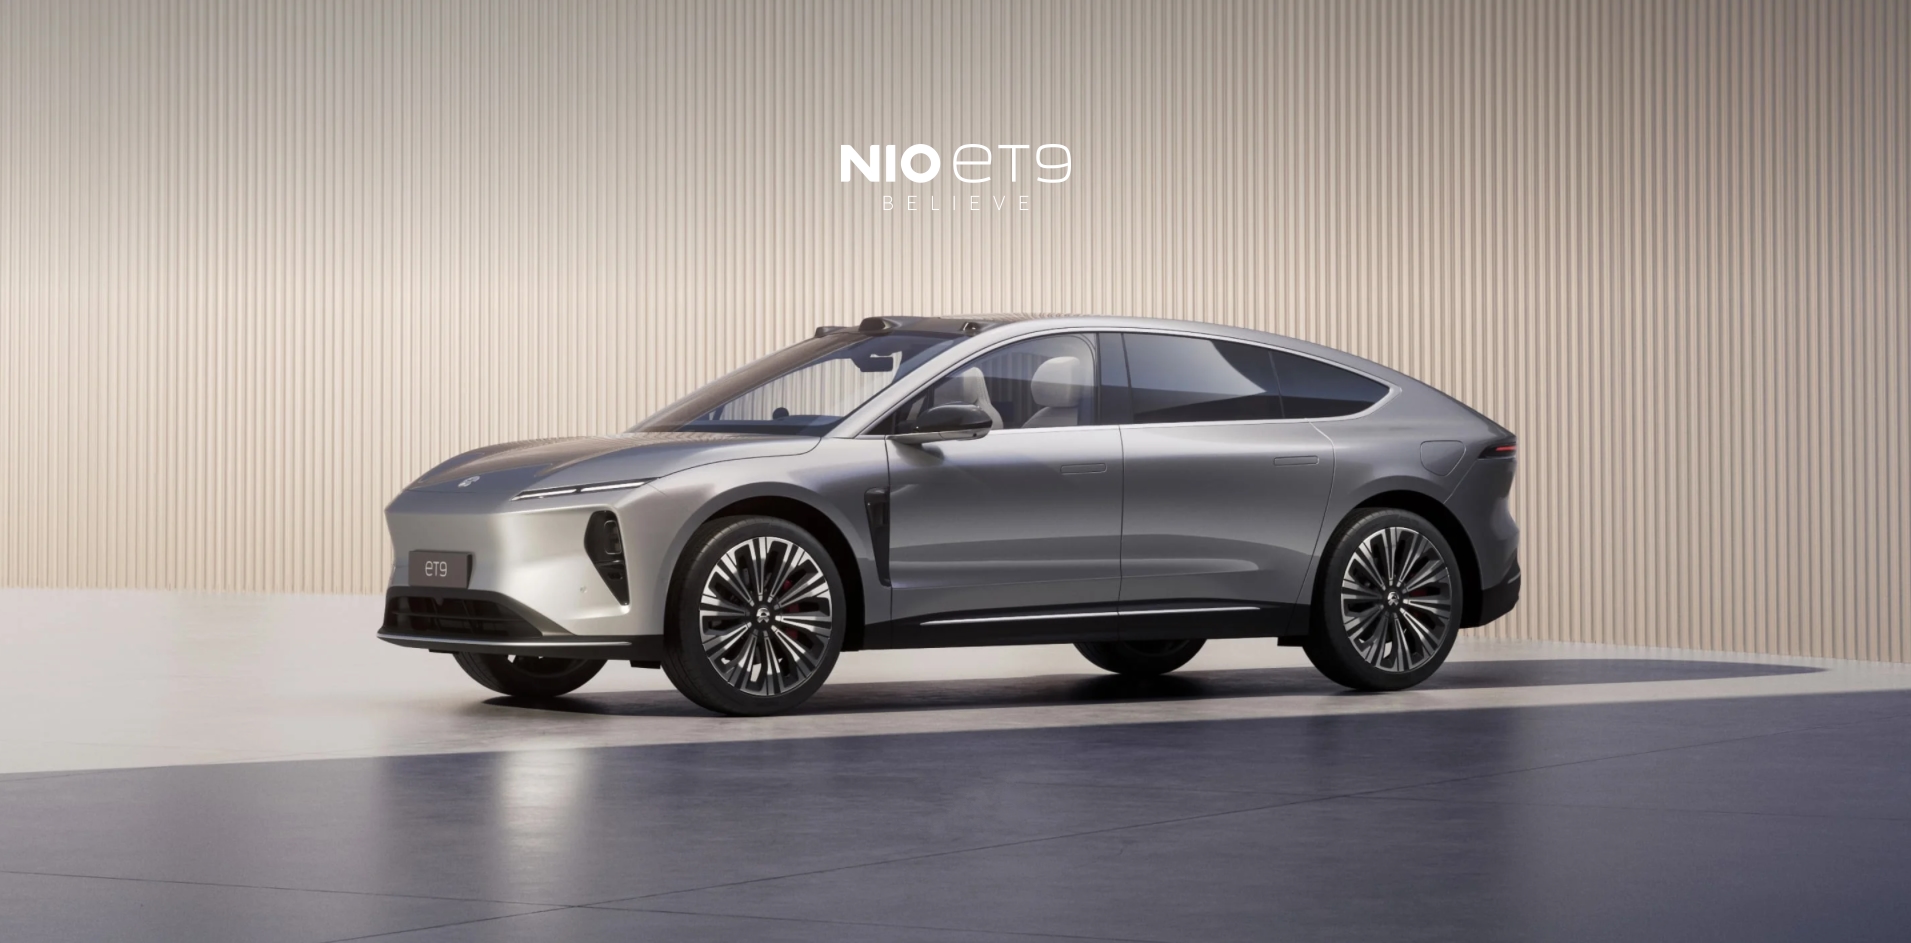 Om te concurreren met de Mercedes-Benz Maybach: Nio heeft de ET9 premium elektrische auto onthuld voor $112.000